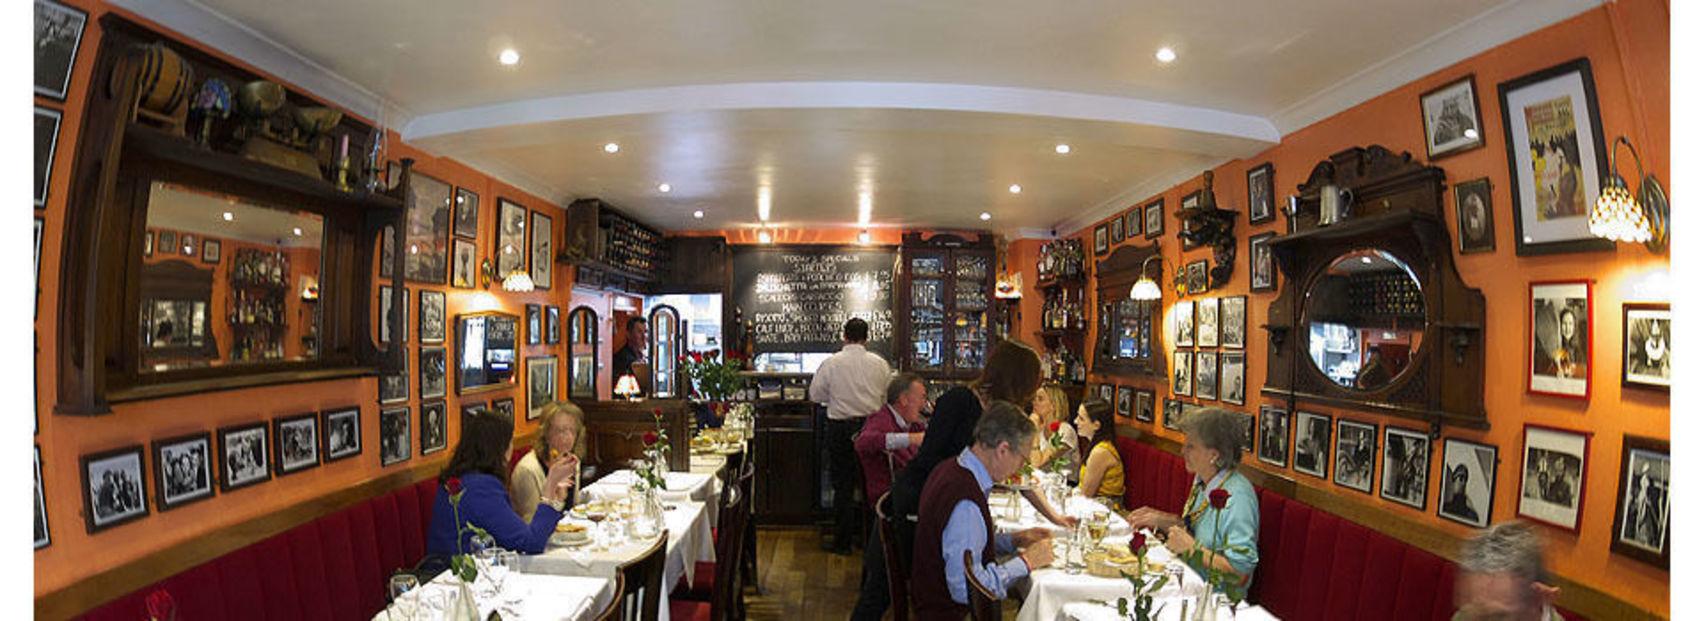 Paolo's Ristorante, Lunch, Full Restaurant photo #0